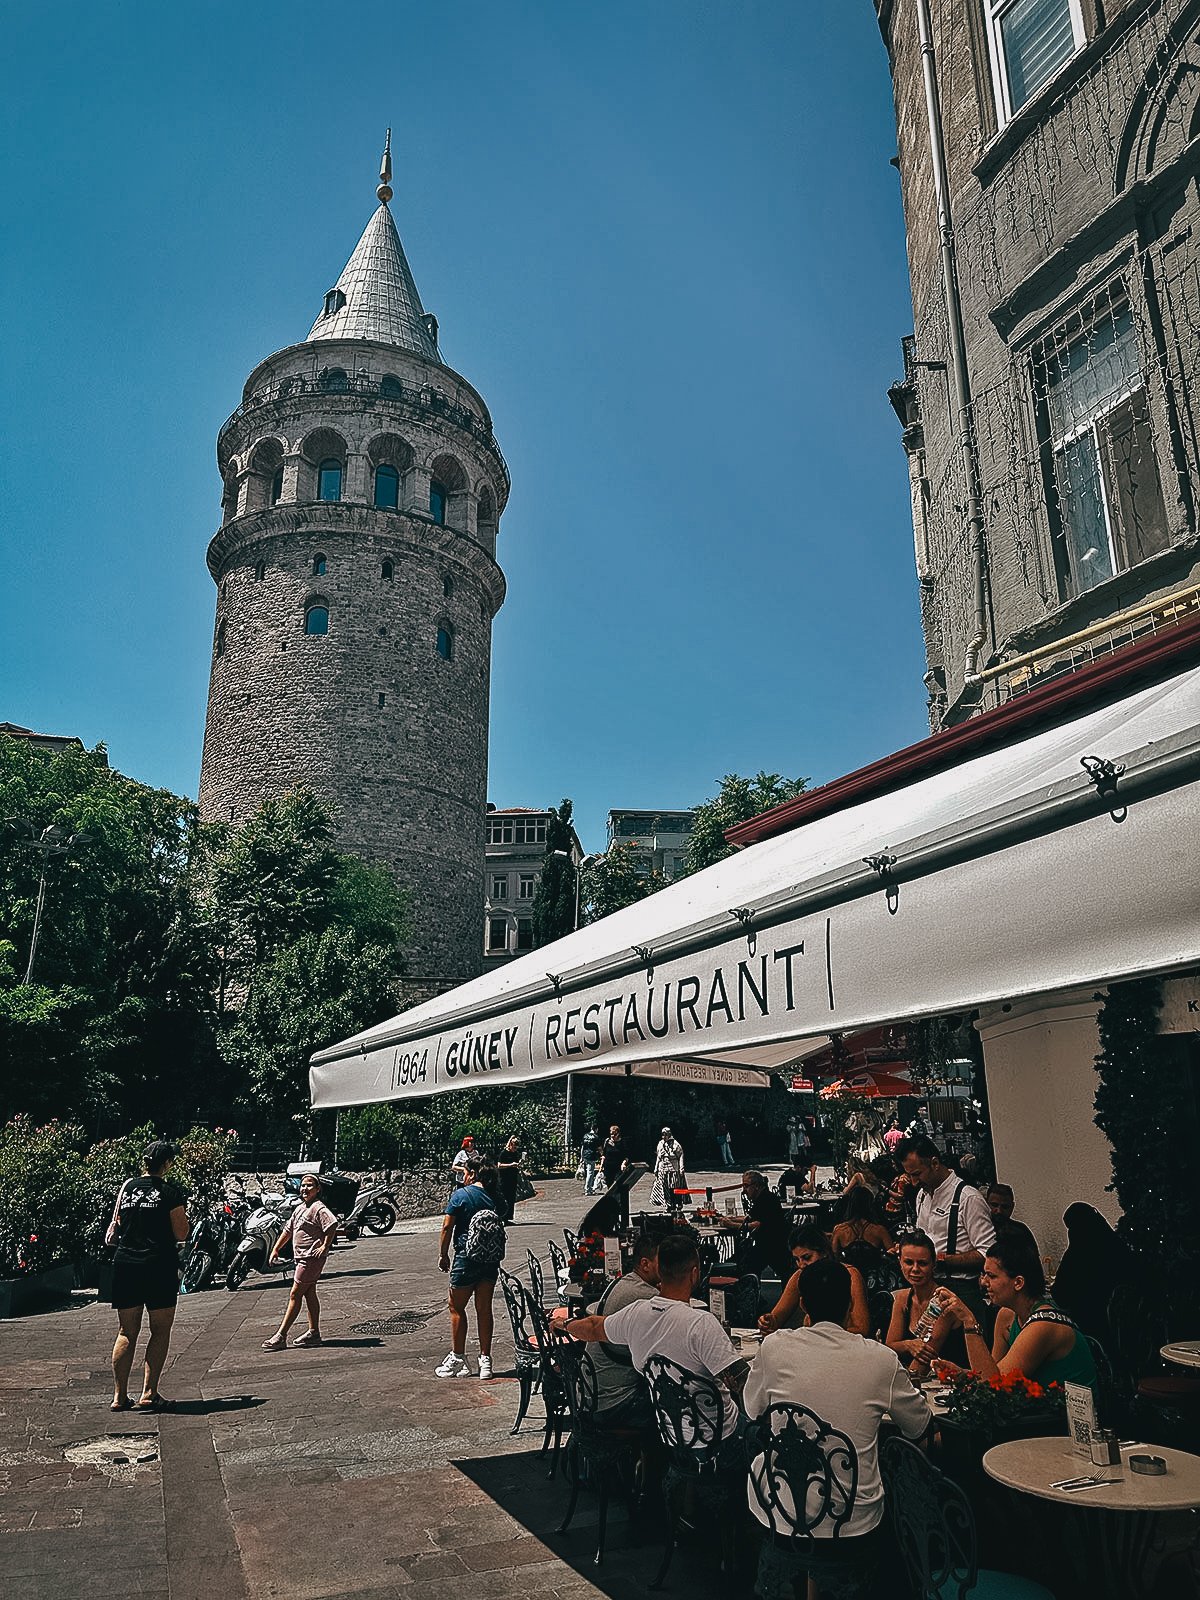 Guney restaurant in Istanbul